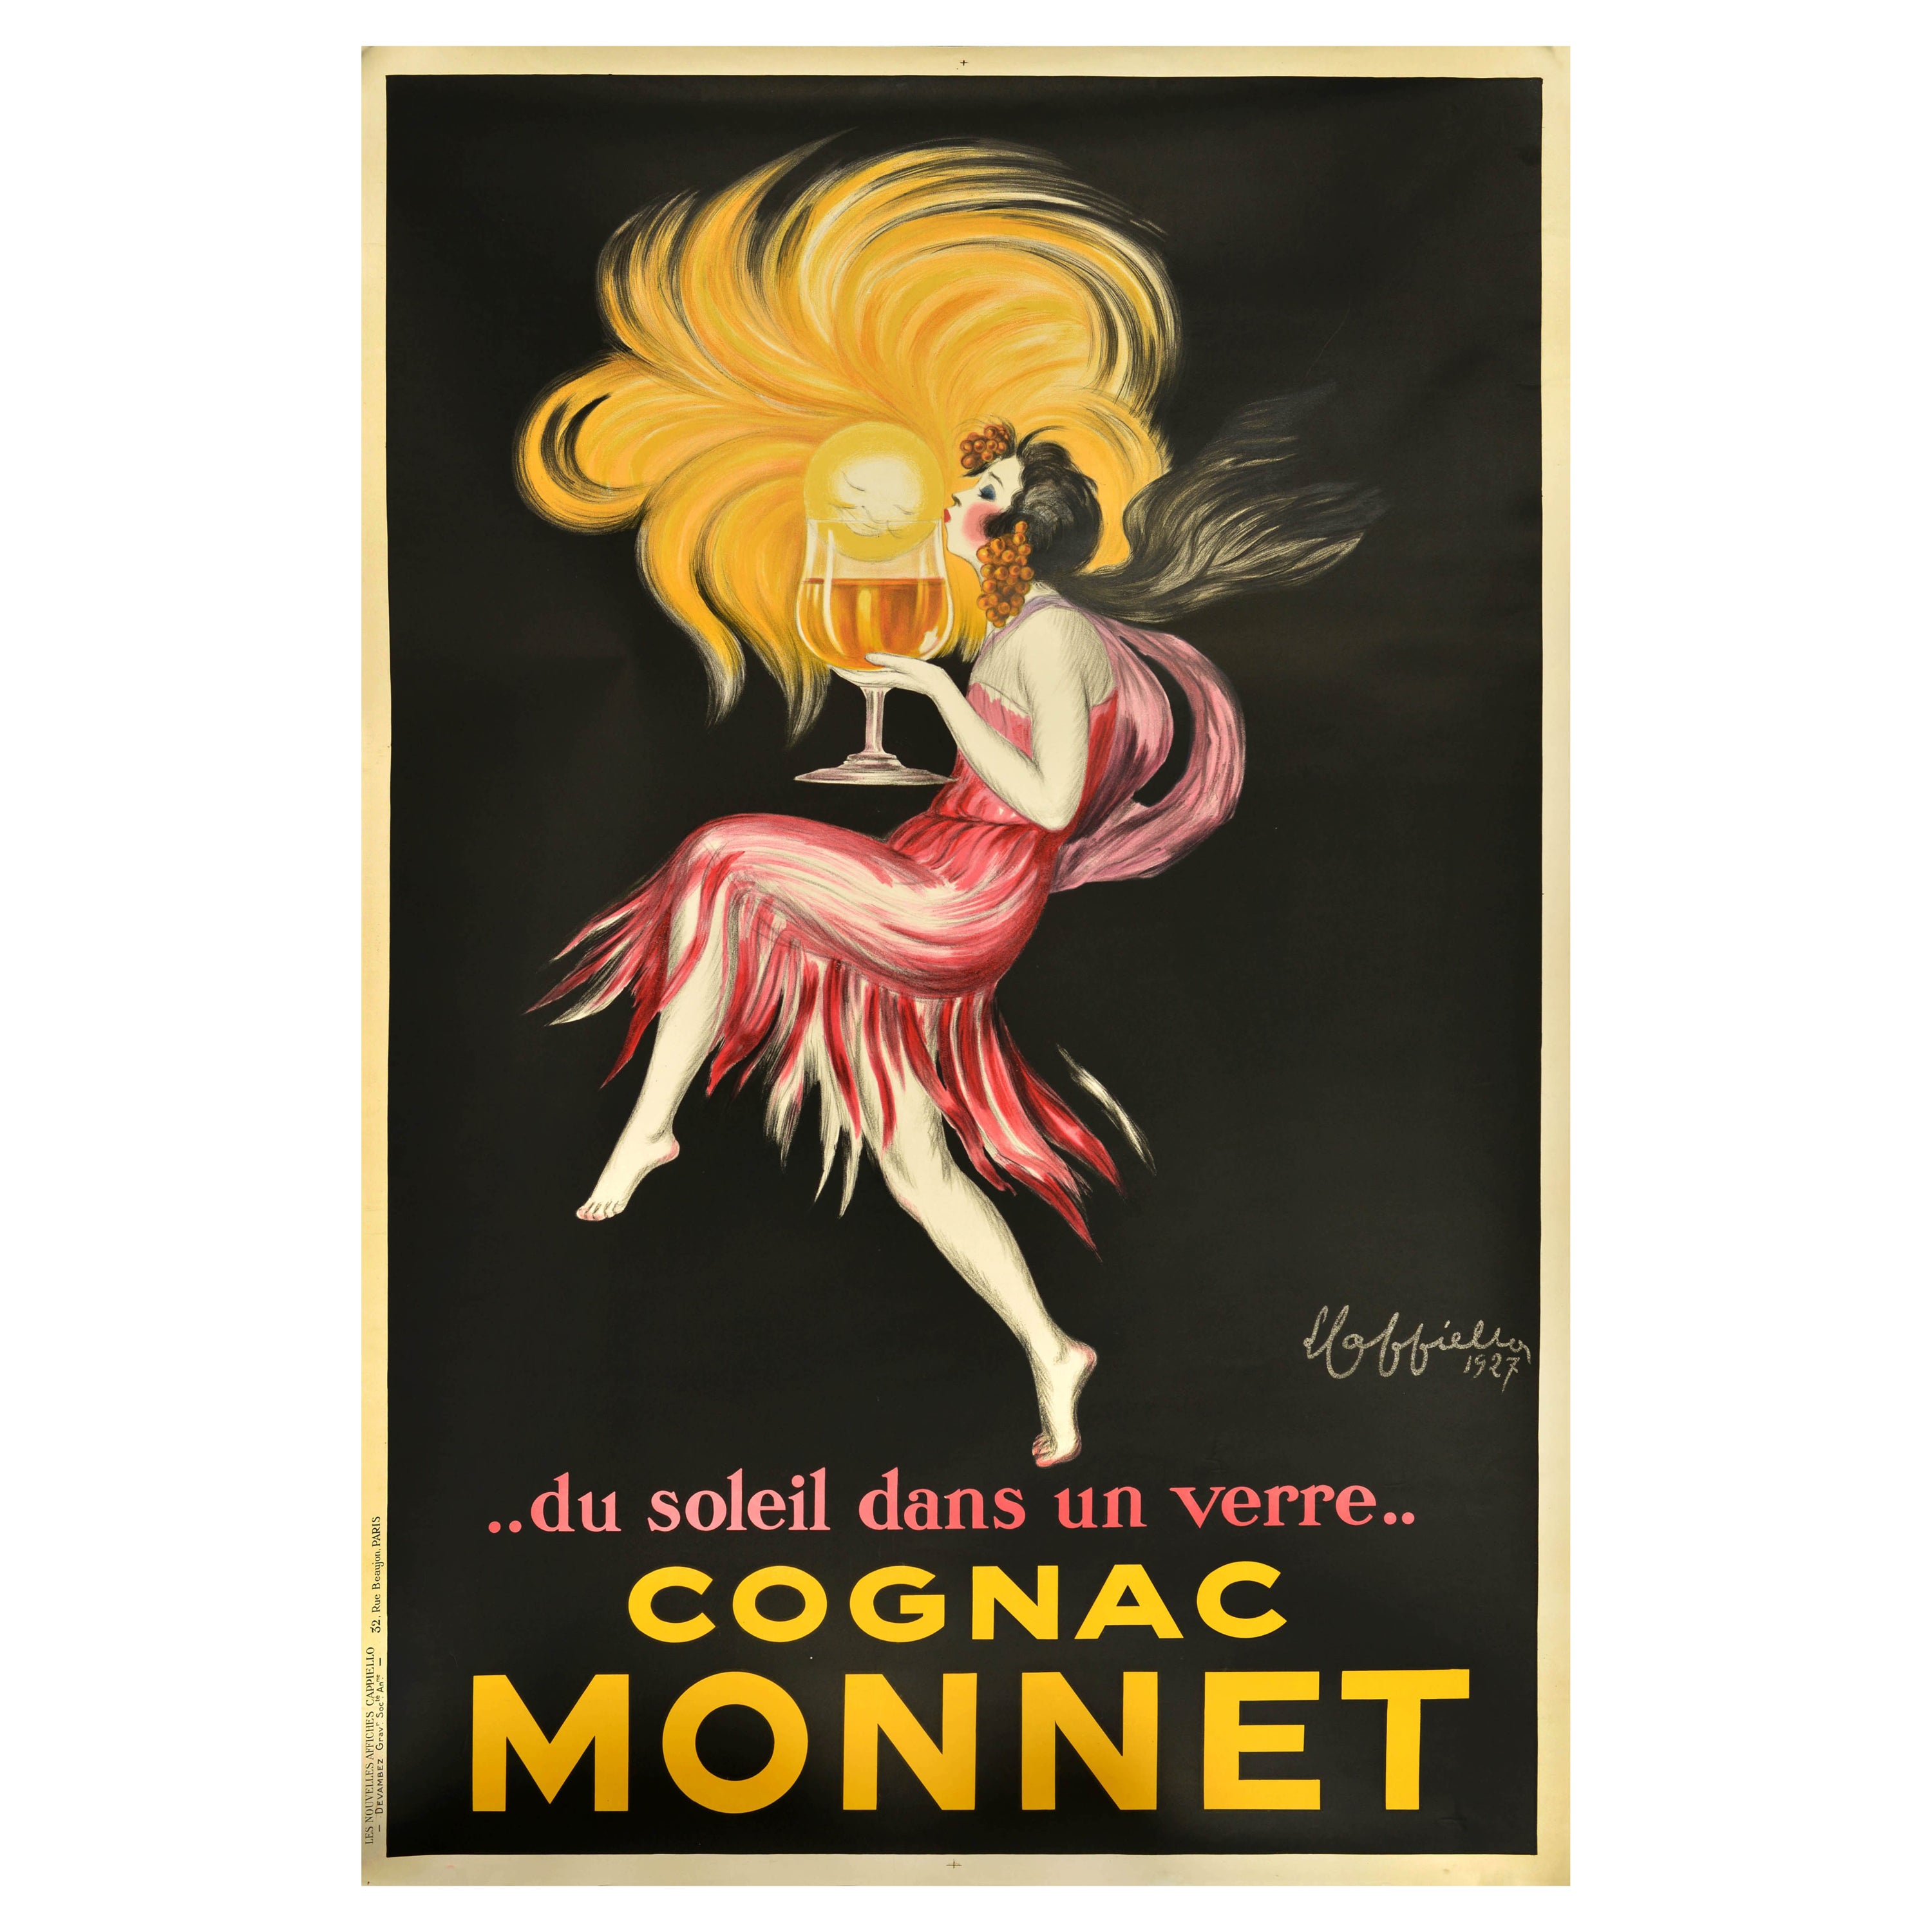 Original Vintage-Werbeplakat für Getränke, Cognac, Monnet Leonetto Cappiello, Leonetto